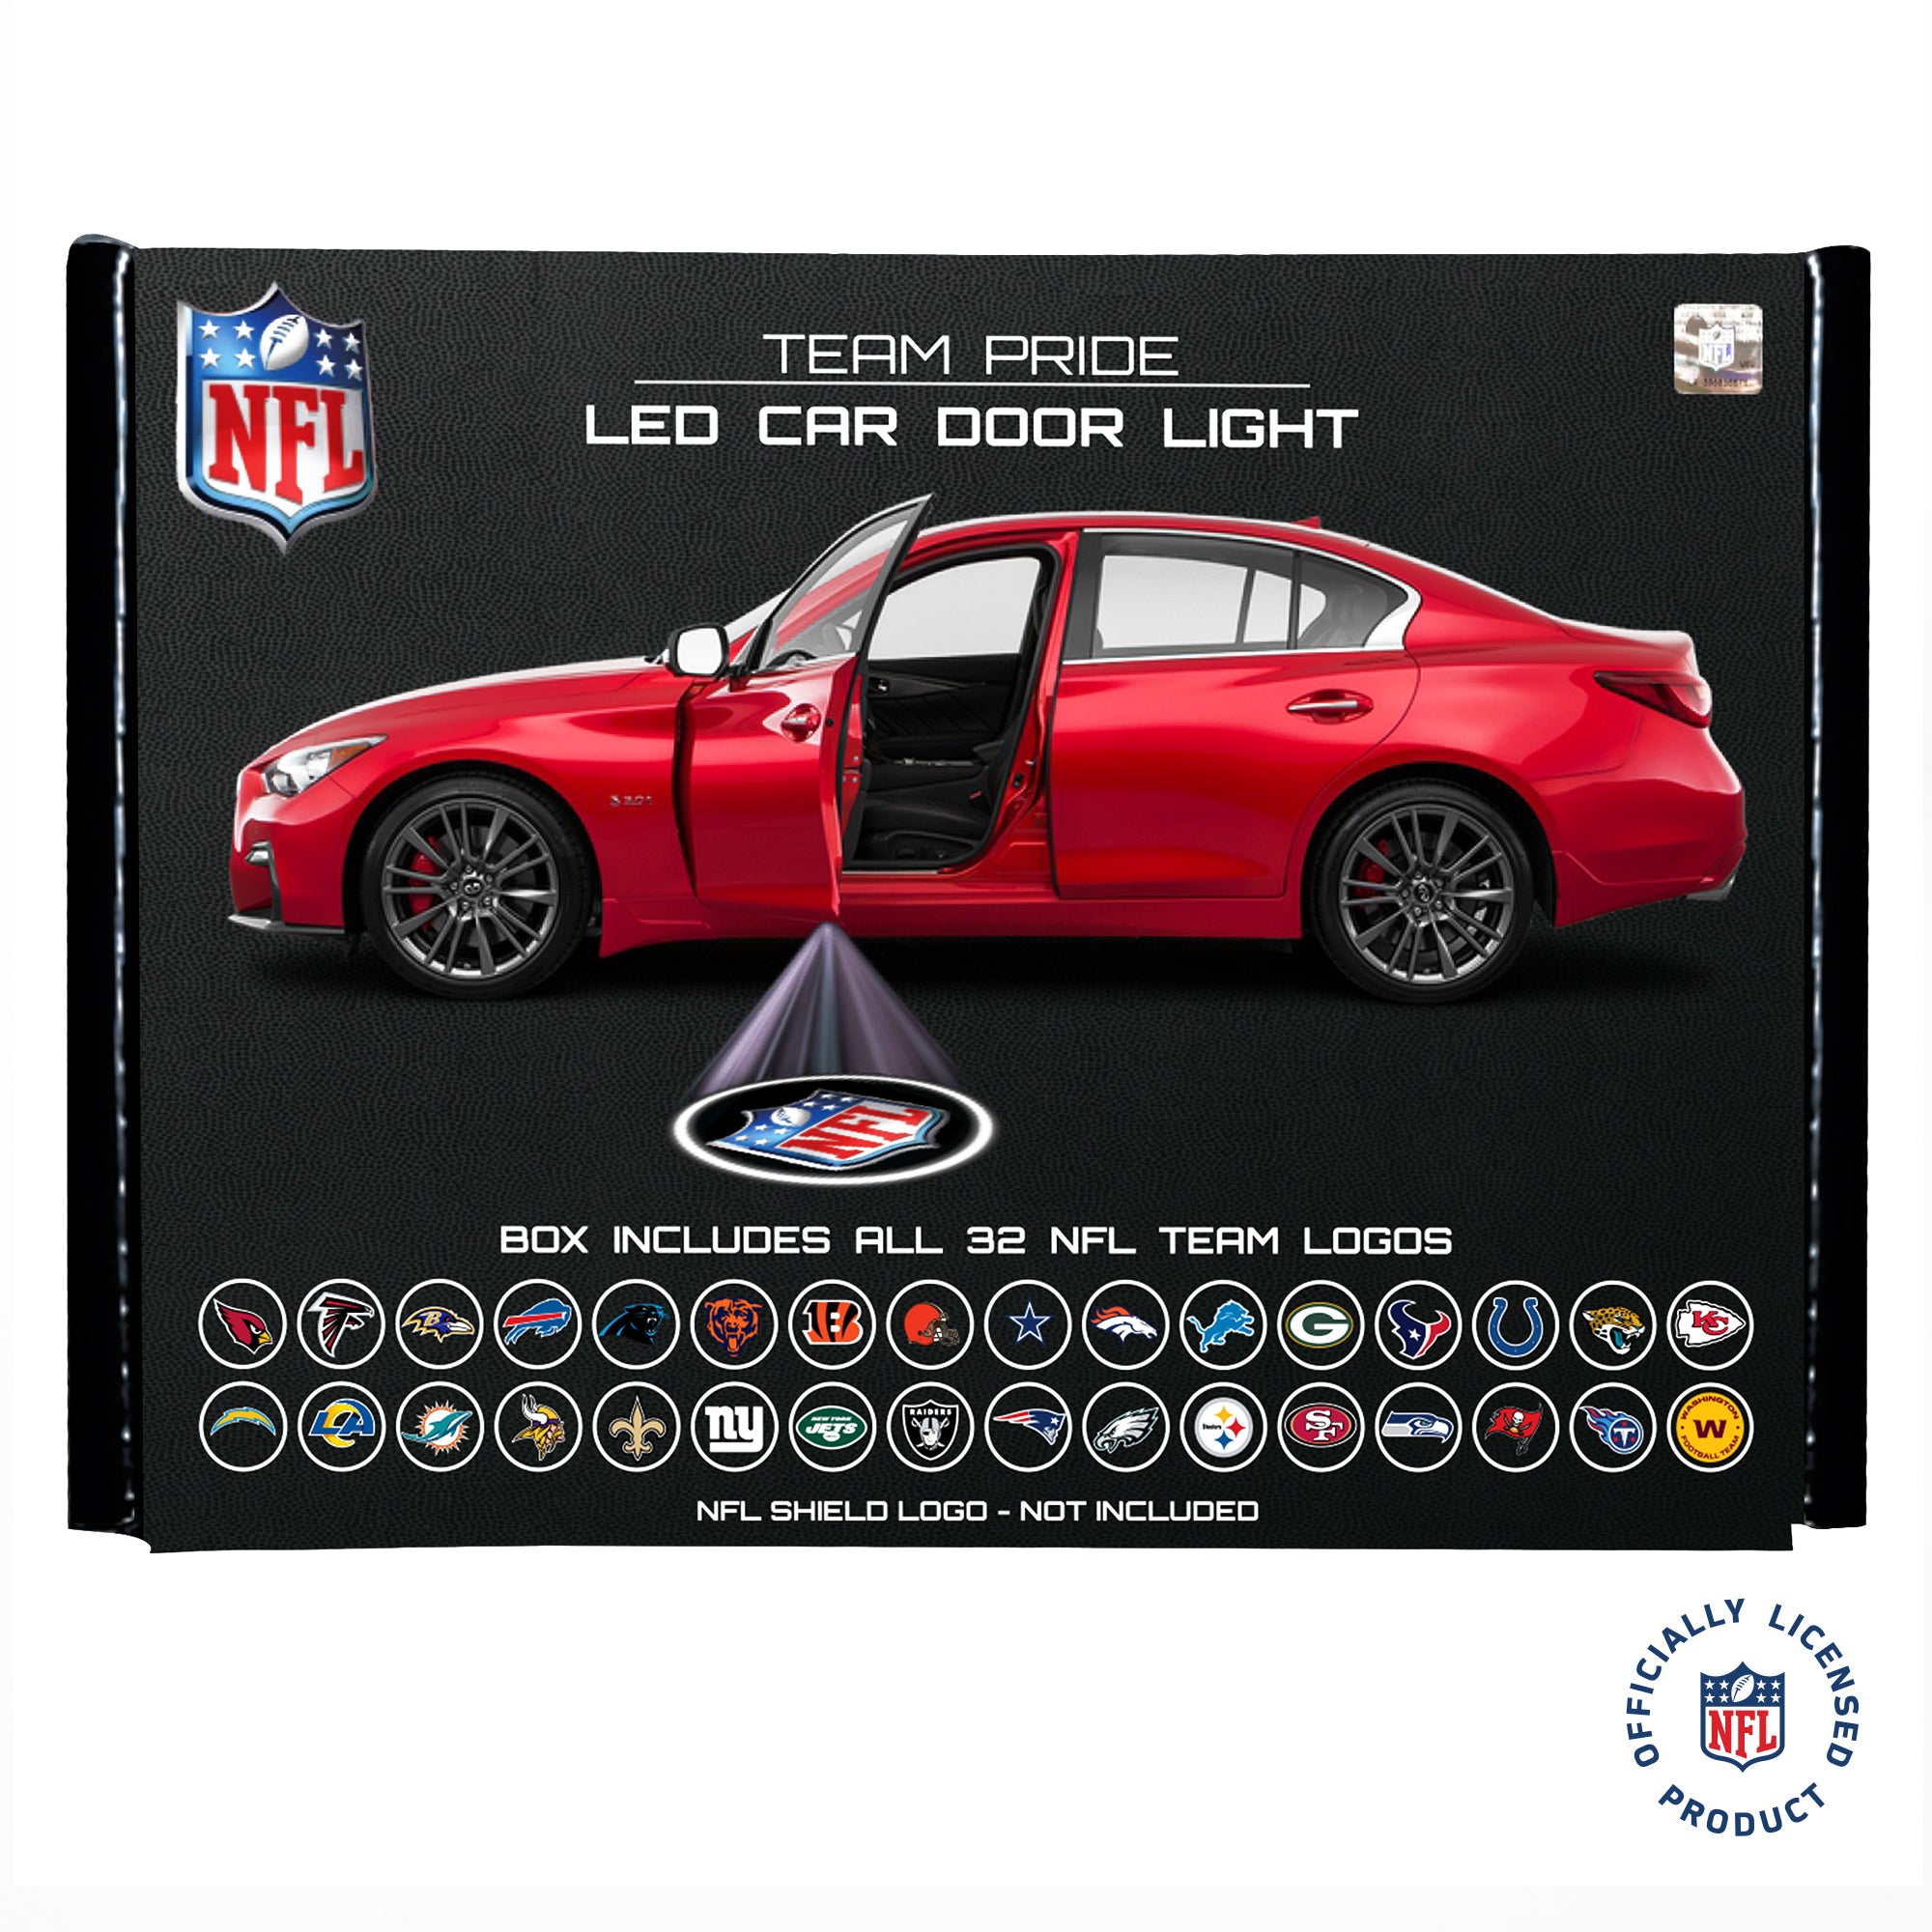 NFL NFL Team Pride LED Car Door Light